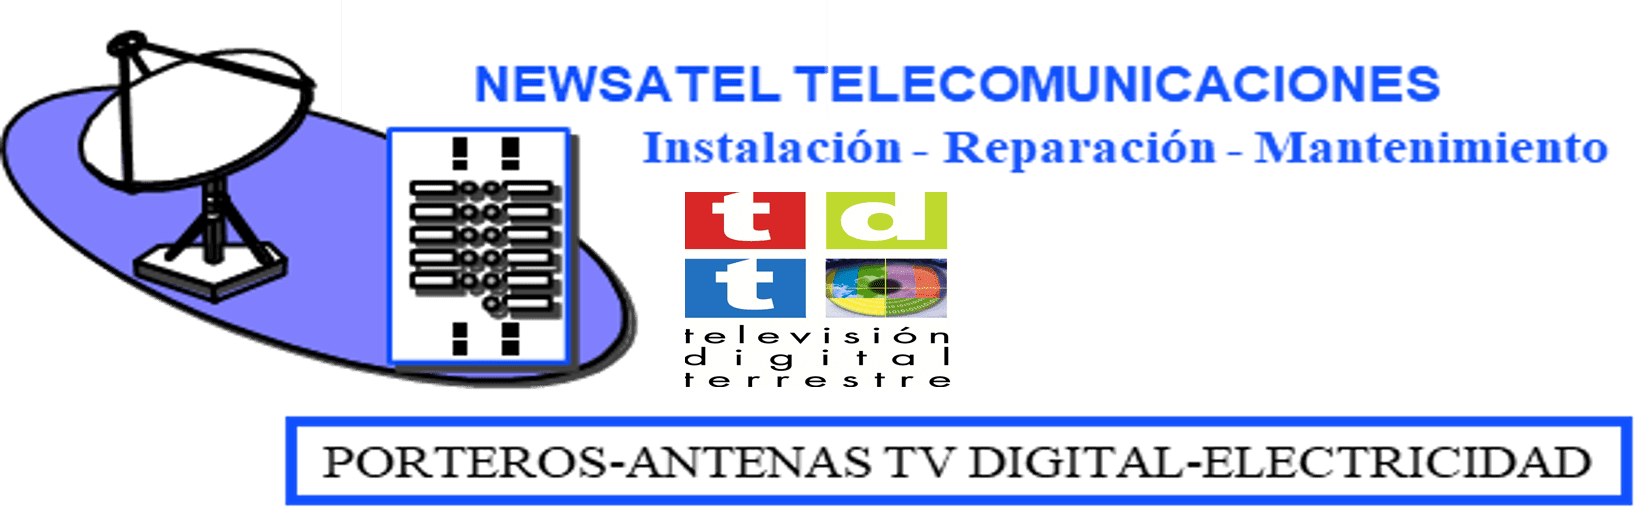 Newsatel Telecomunicaciones